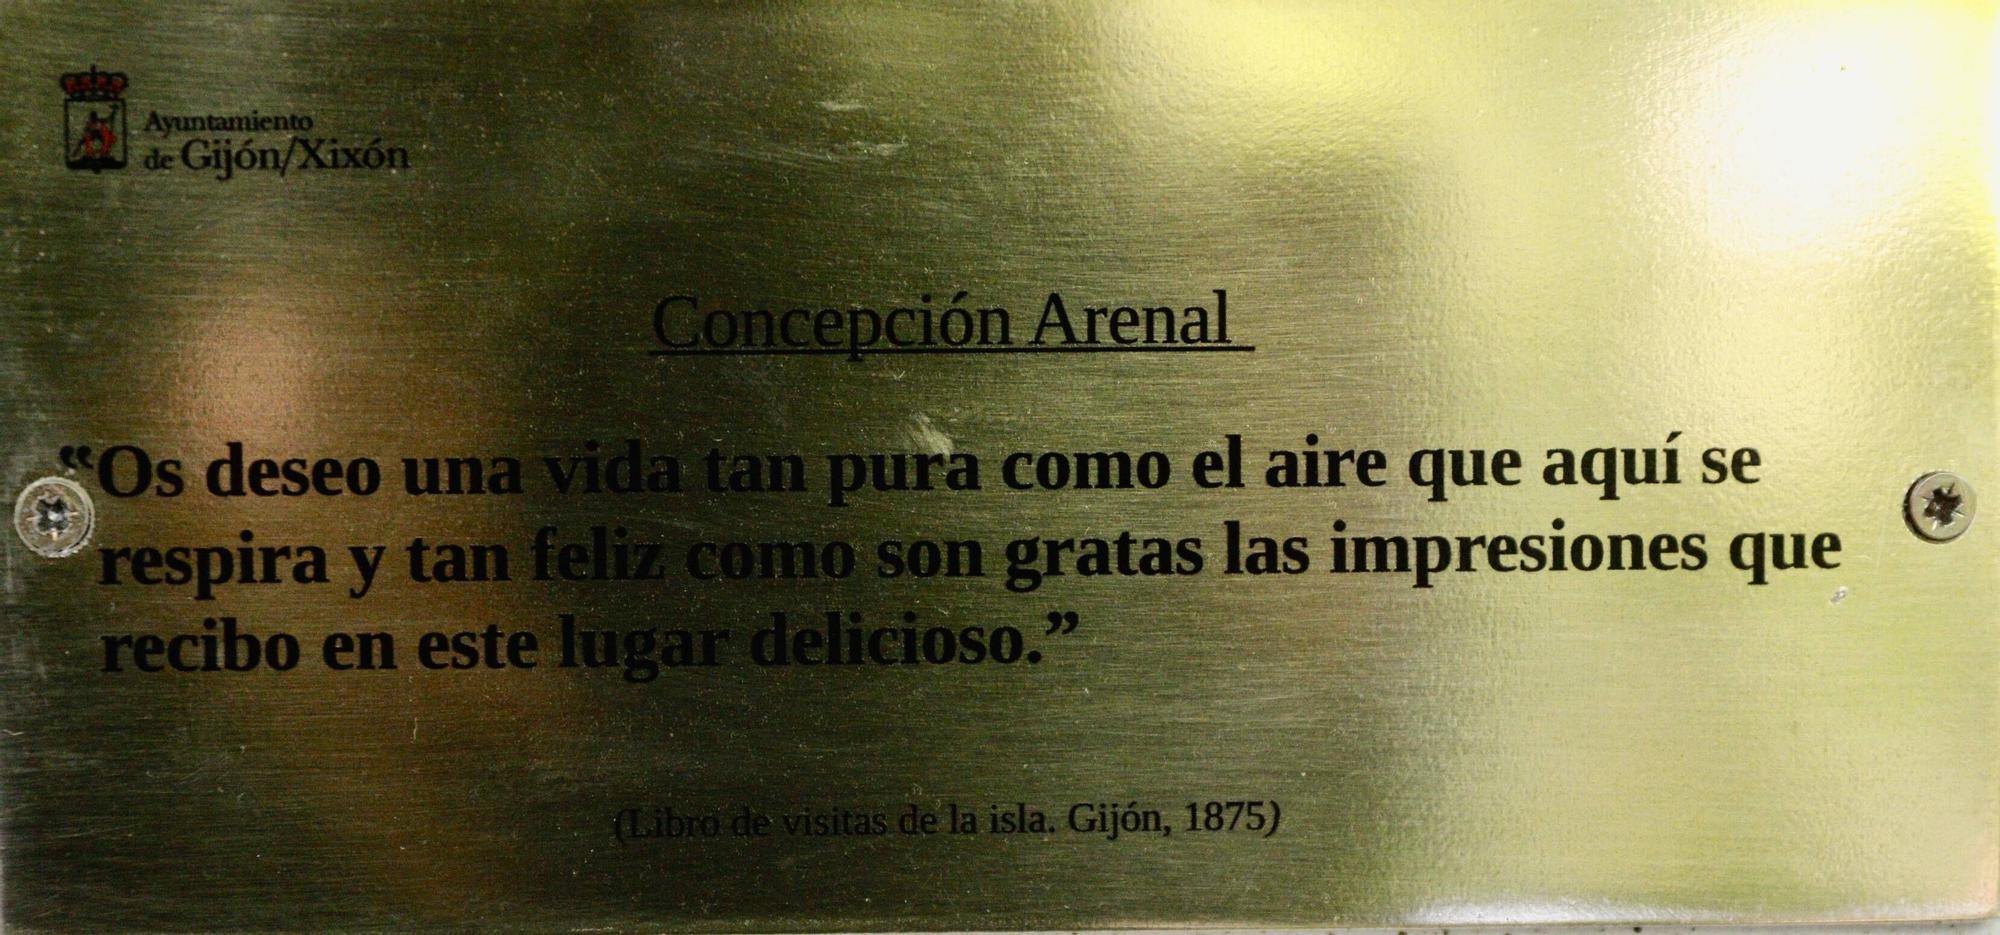 Placas en recuerdo de Rosario de Acuña y Concepción Arenal en el Botánico